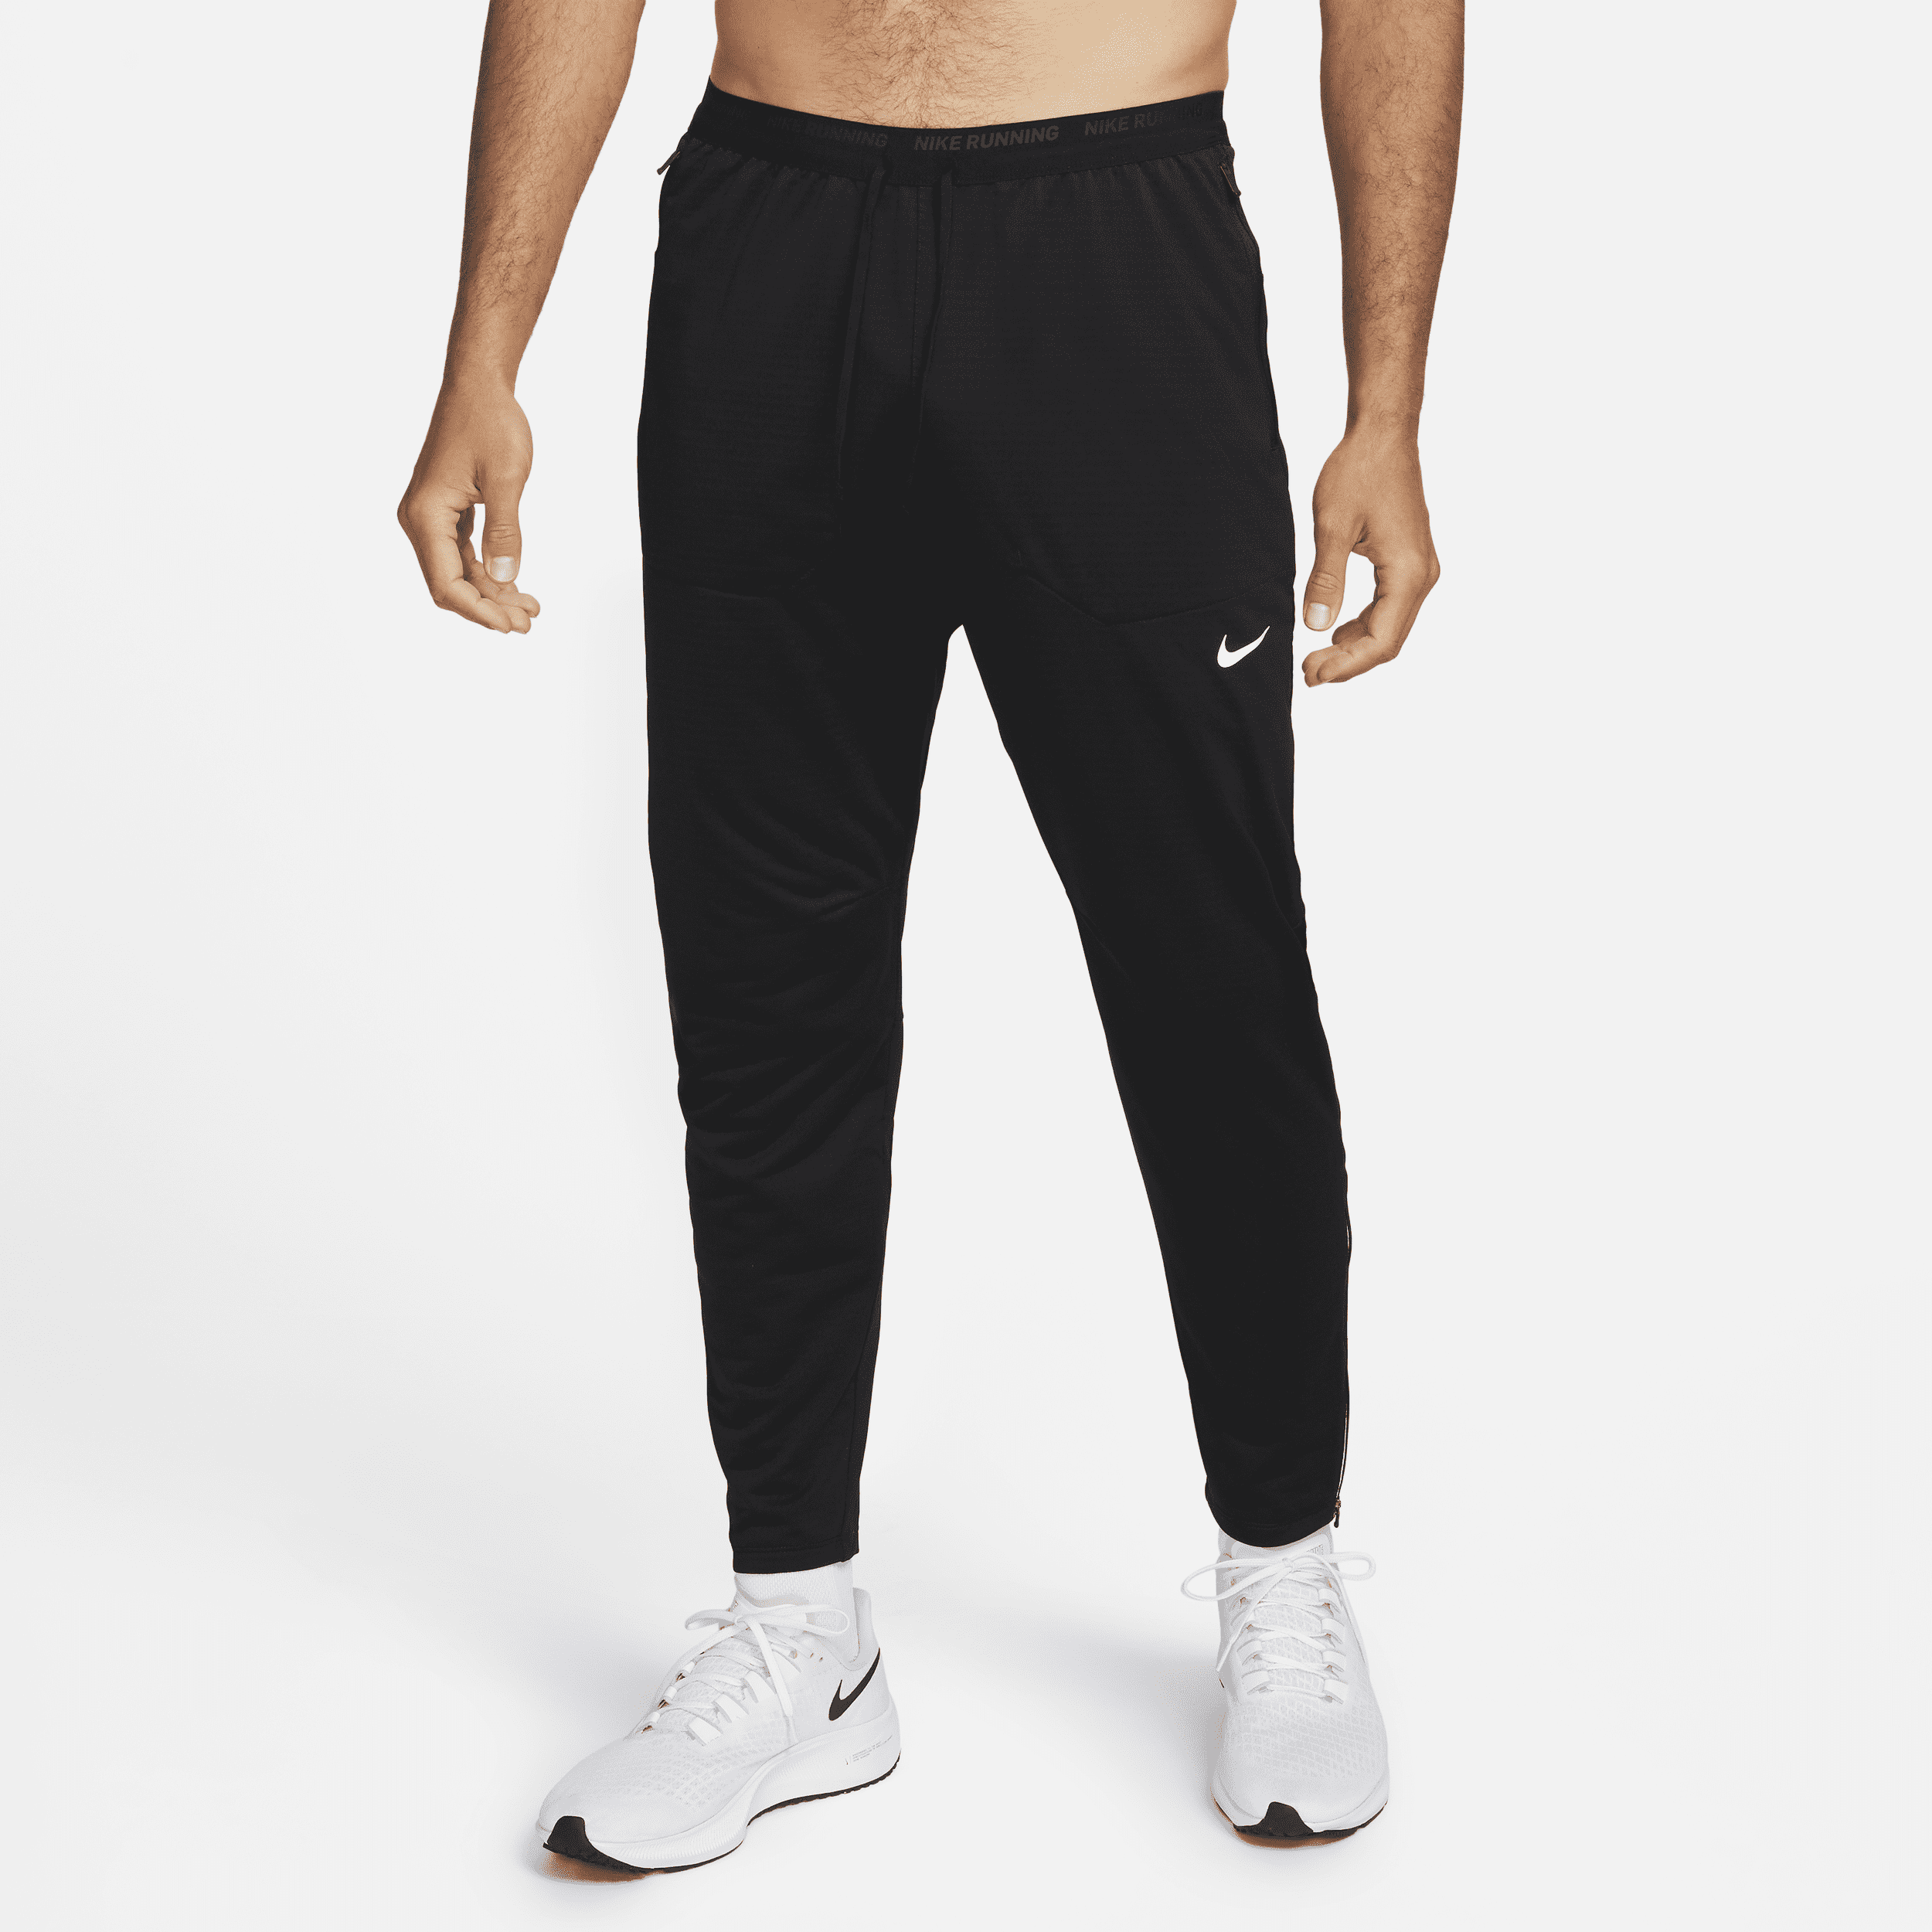 Pantaloni da running in maglia Dri-FIT Nike Phenom – Uomo - Nero